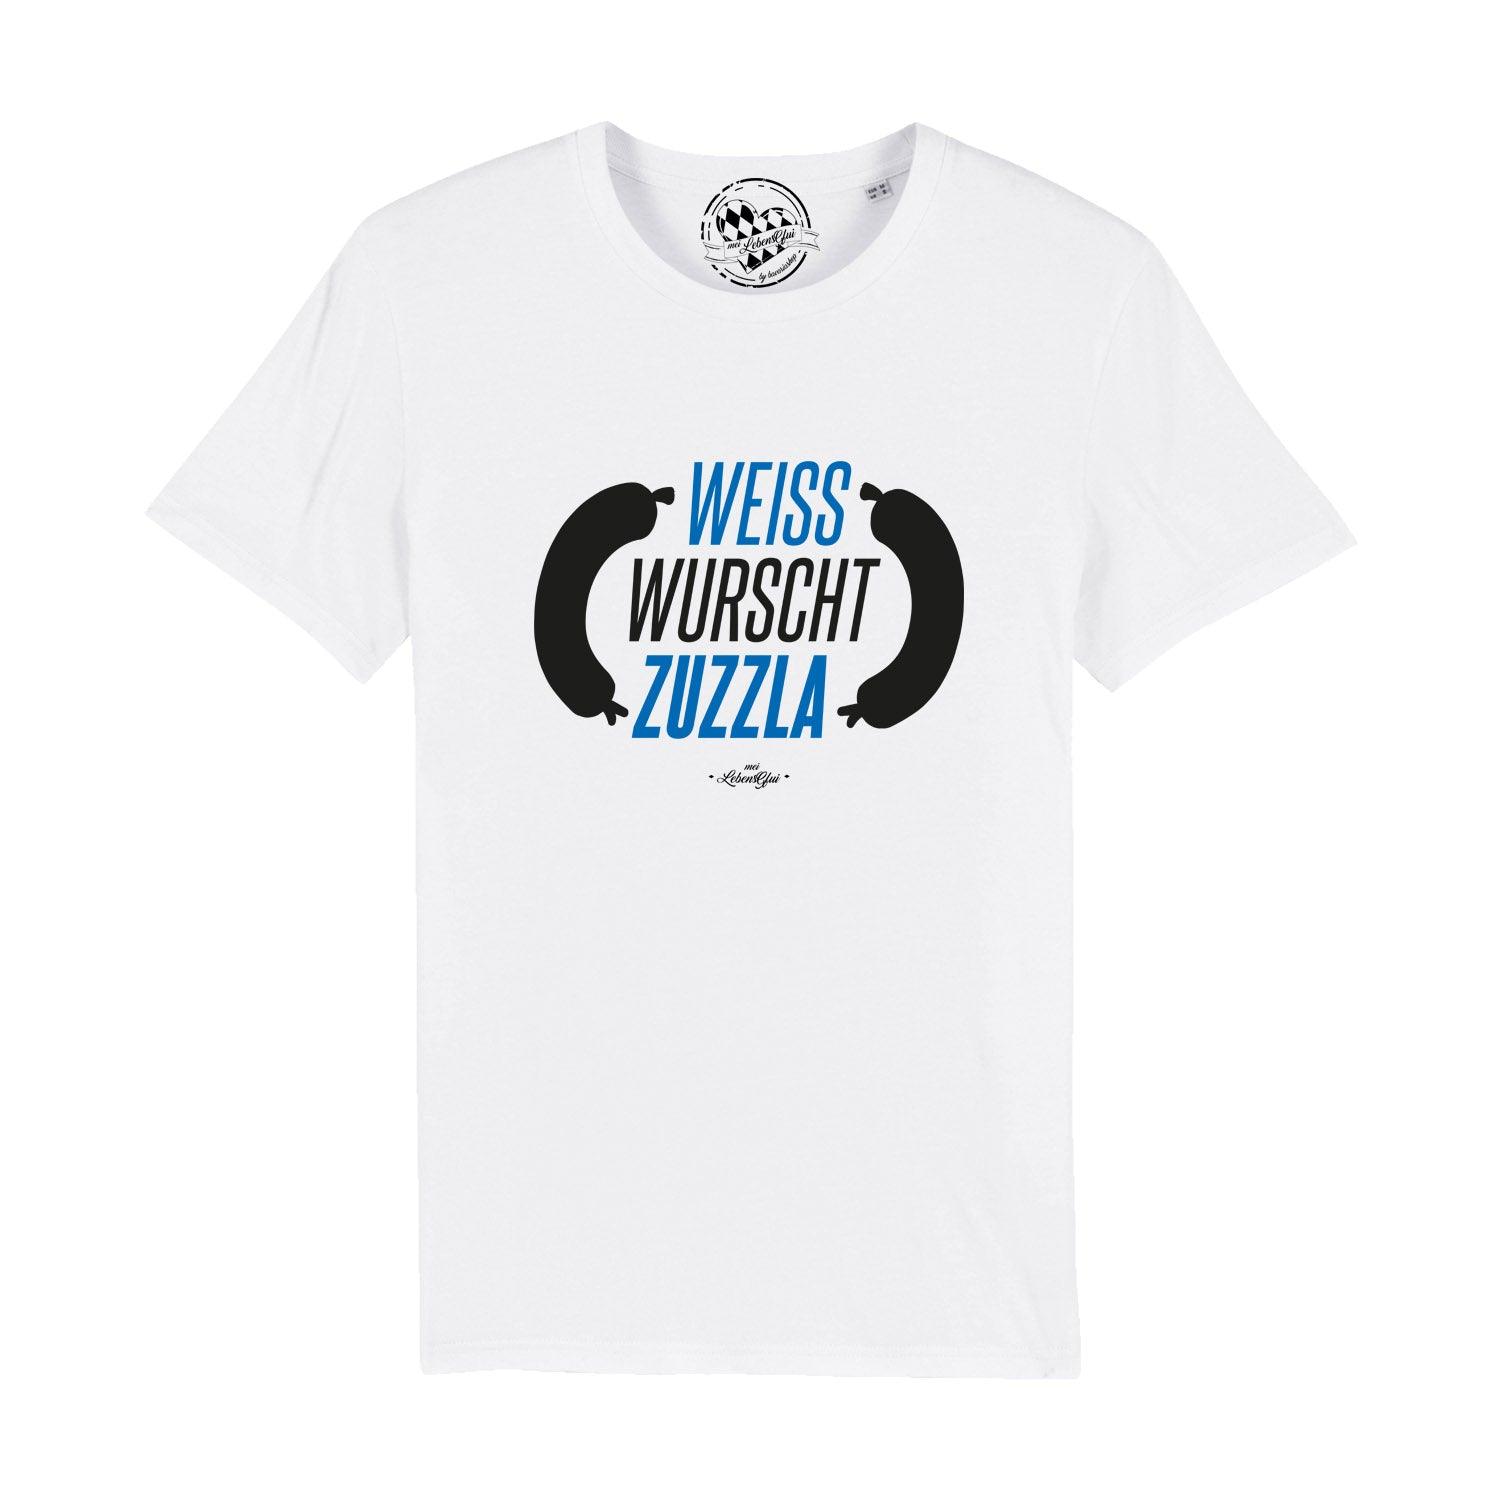 Herren T-Shirt "Weisswurschtzuzzla" - bavariashop - mei LebensGfui